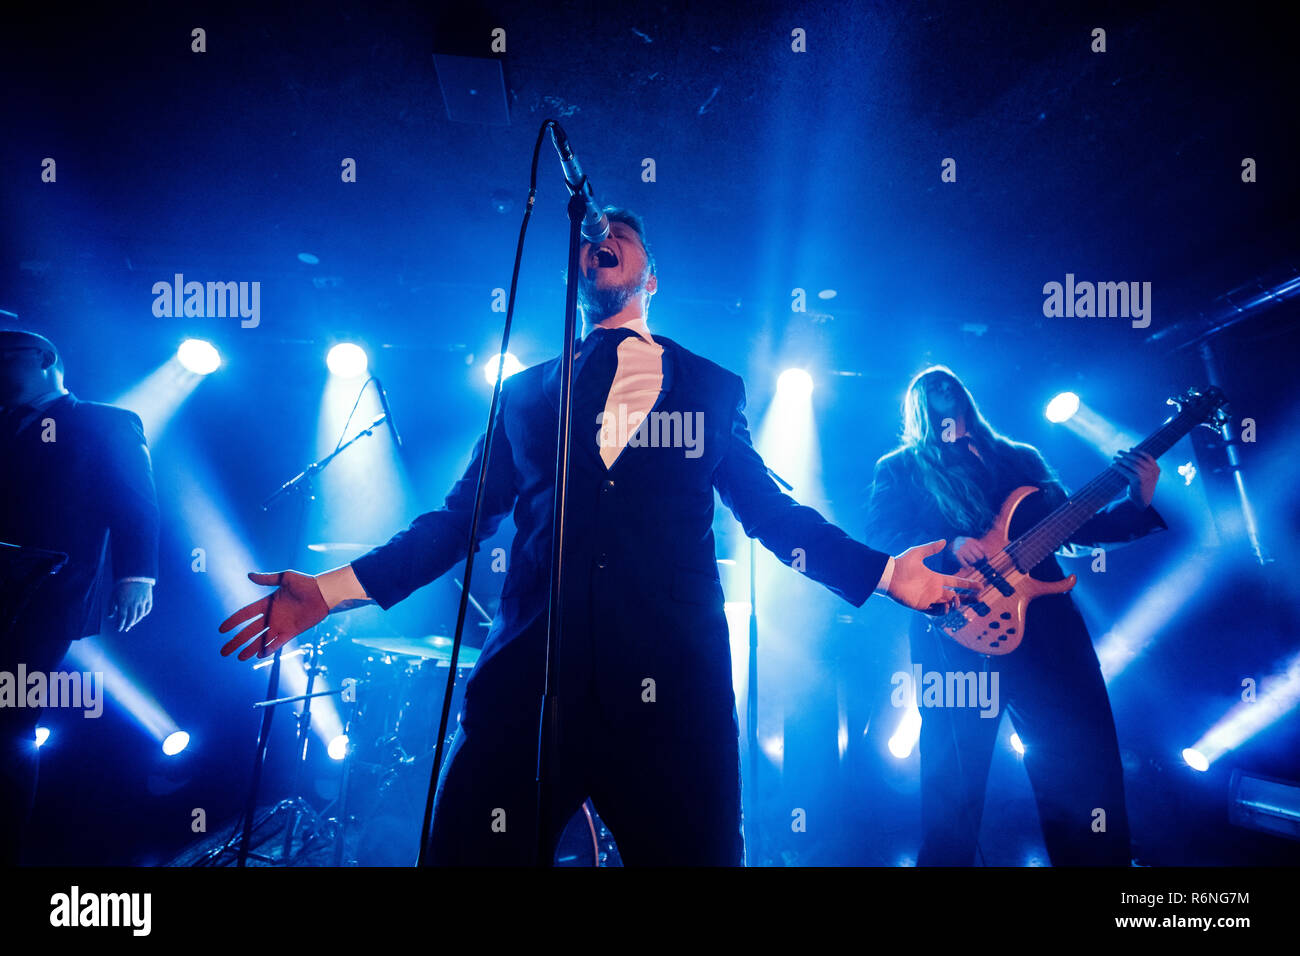 Danemark, copenhague - le 5 décembre 2018. Le groupe de doom metal Hamferd féroïen effectue un concert live à bêta dans Copenhague. Ici le chanteur Jon Aldara est vu sur scène. (Photo crédit : Gonzales Photo - Peter Troest). Banque D'Images